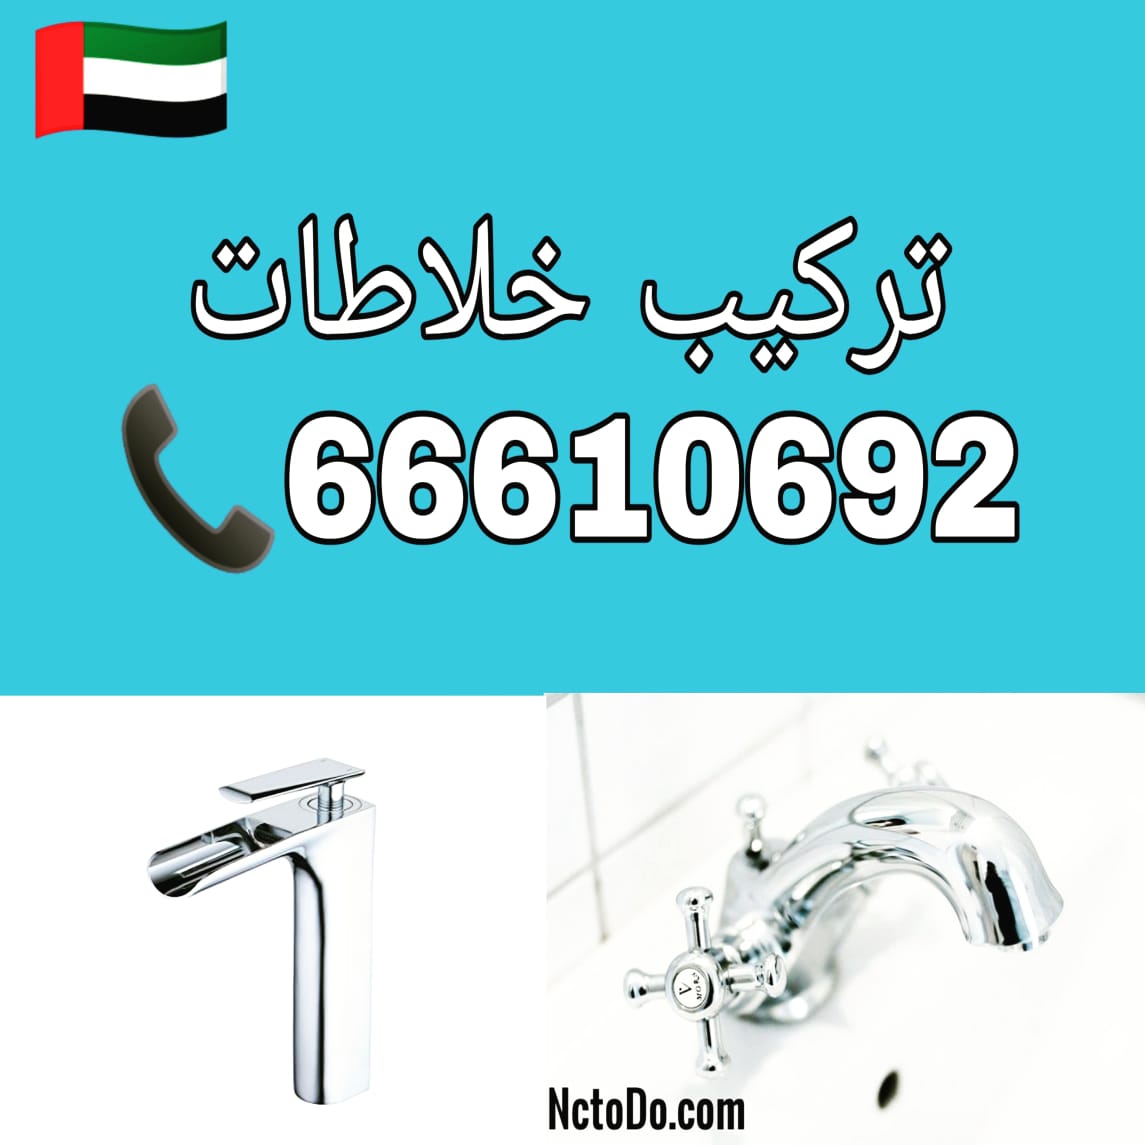 ادوات صحية الرميثية / 66610692 / صيانة وتركيب فني صحي داخل الكويت